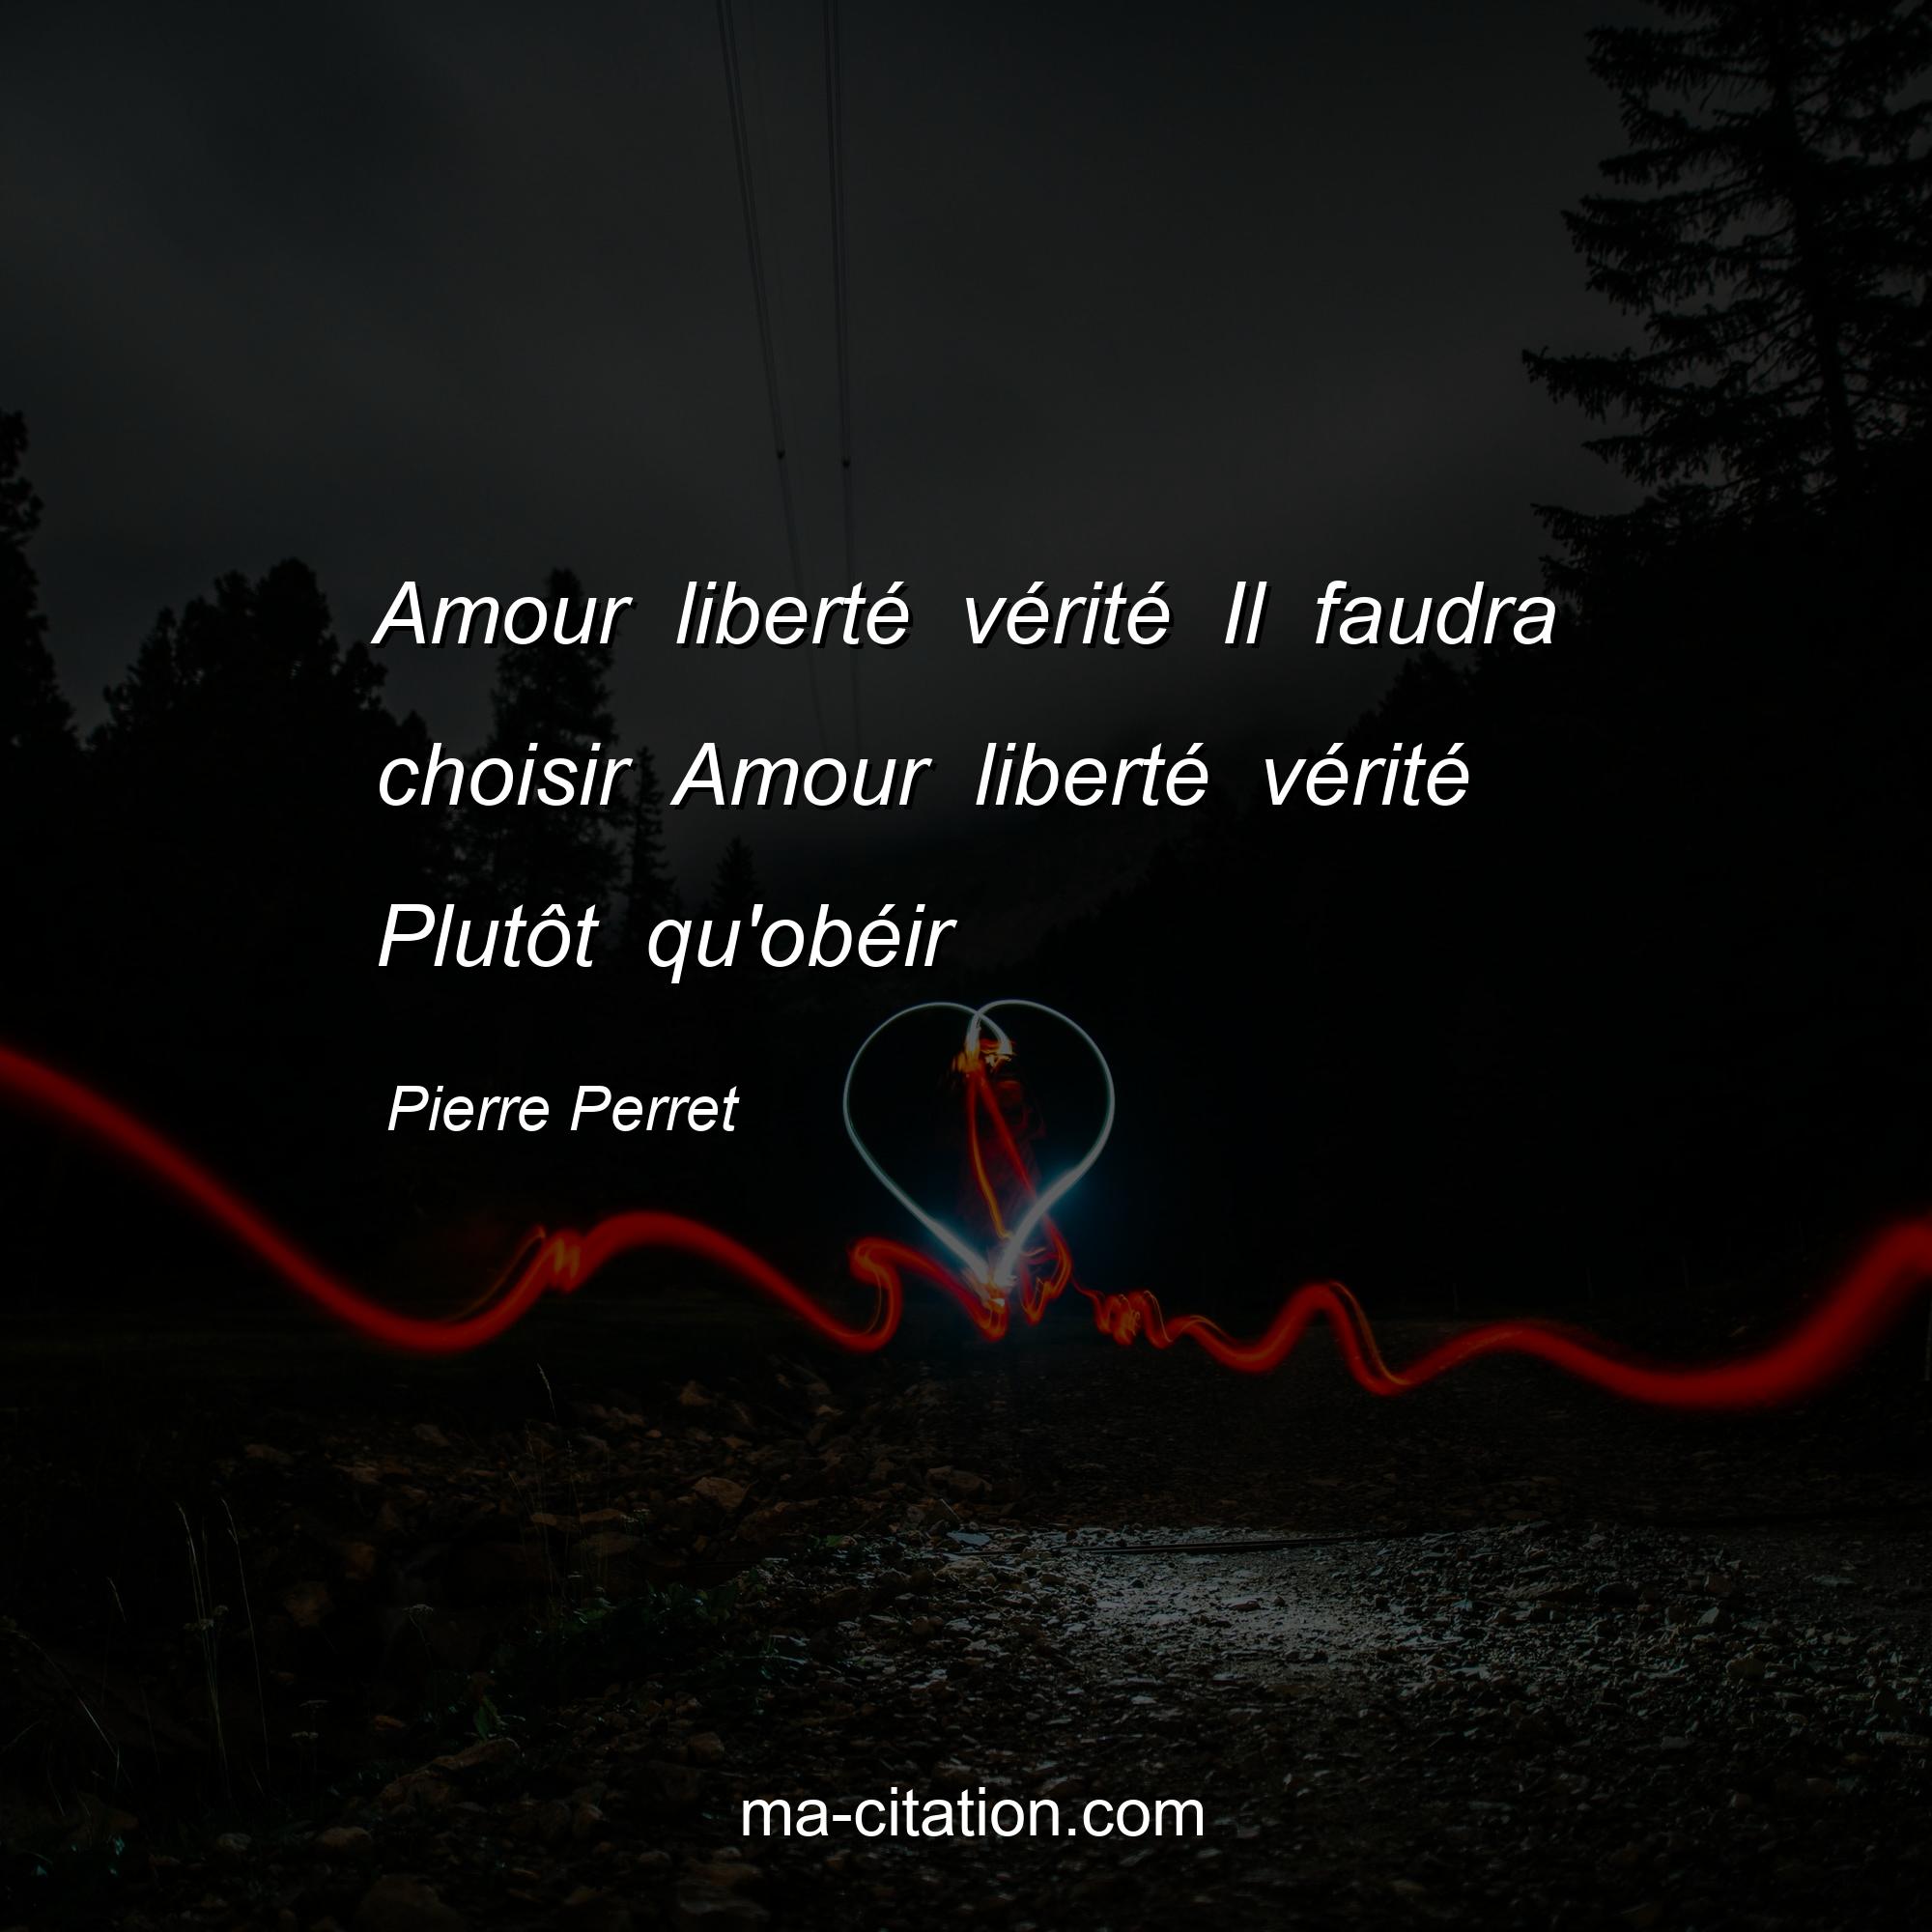 Pierre Perret : Amour liberté vérité Il faudra choisir Amour liberté vérité Plutôt qu'obéir